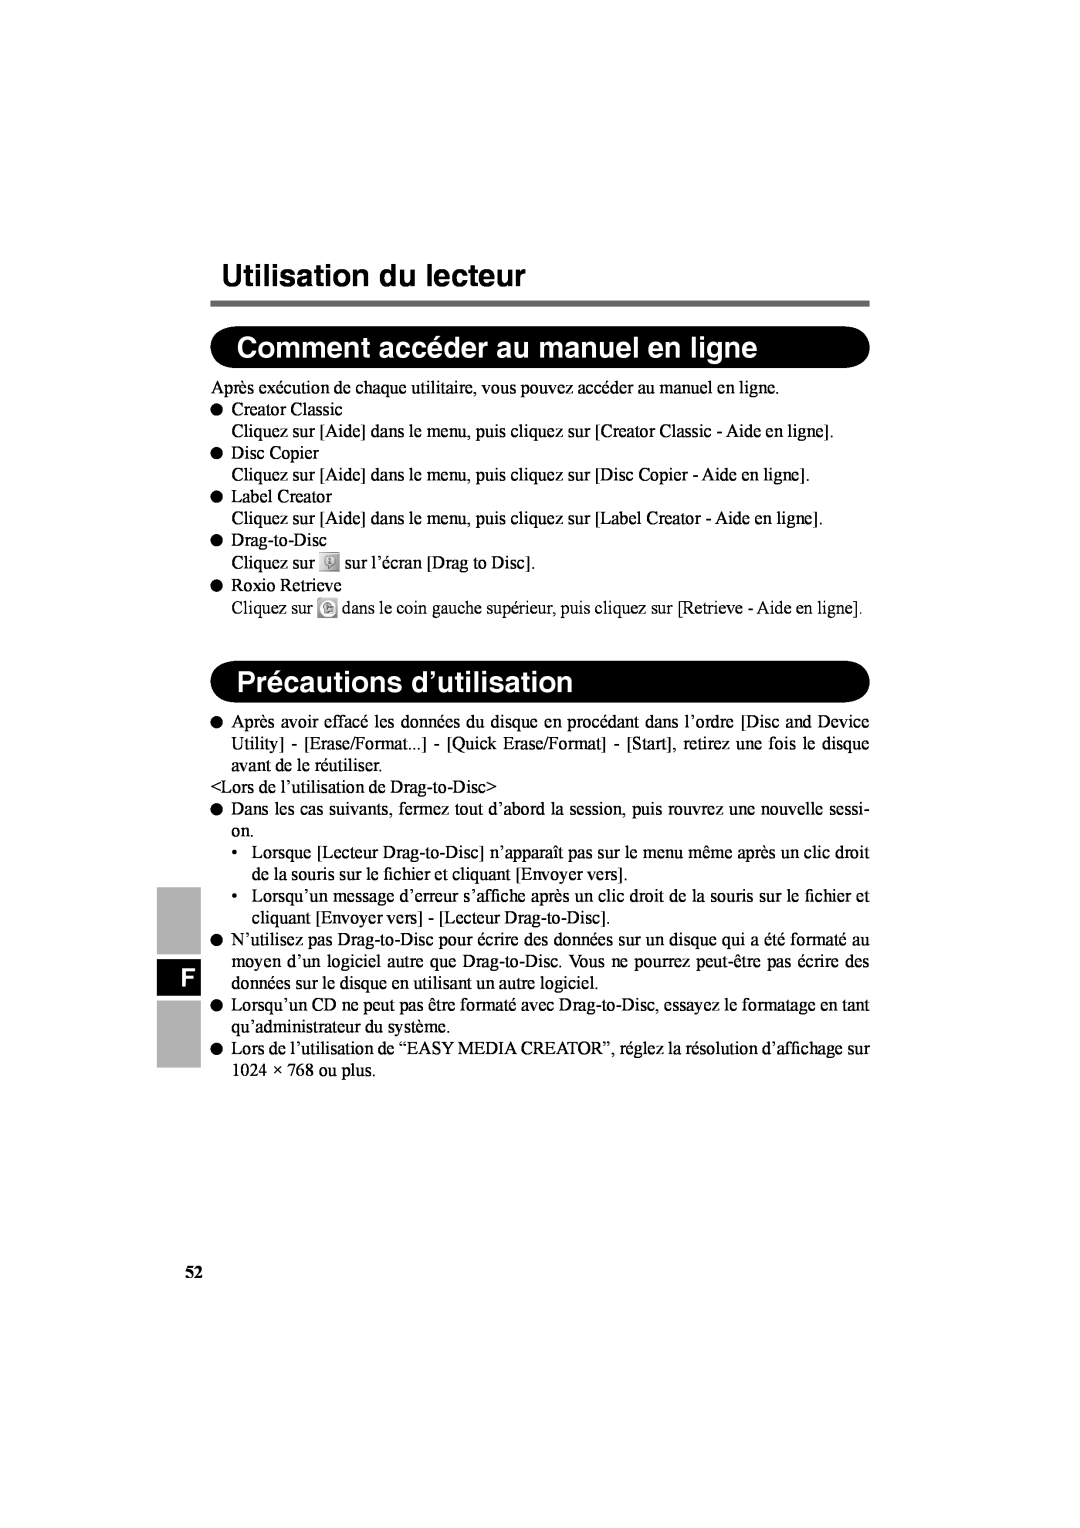 Panasonic CF-VDR301U specifications Comment accéder au manuel en ligne, Précautions d’utilisation, Utilisation du lecteur 